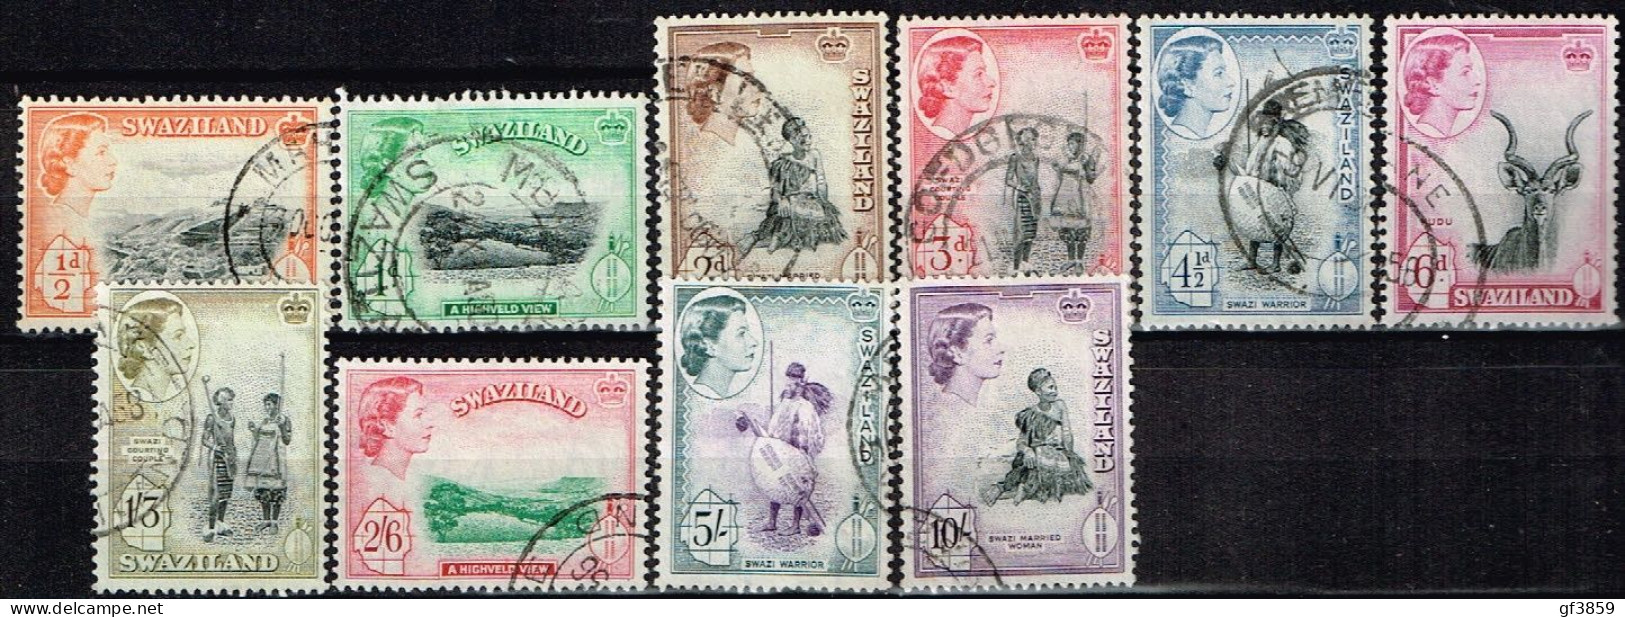 SWAZILAND / Oblitérés / Used / 1956 - Série Courante / Elizabeth II Et Sujet Divers - Swaziland (...-1967)